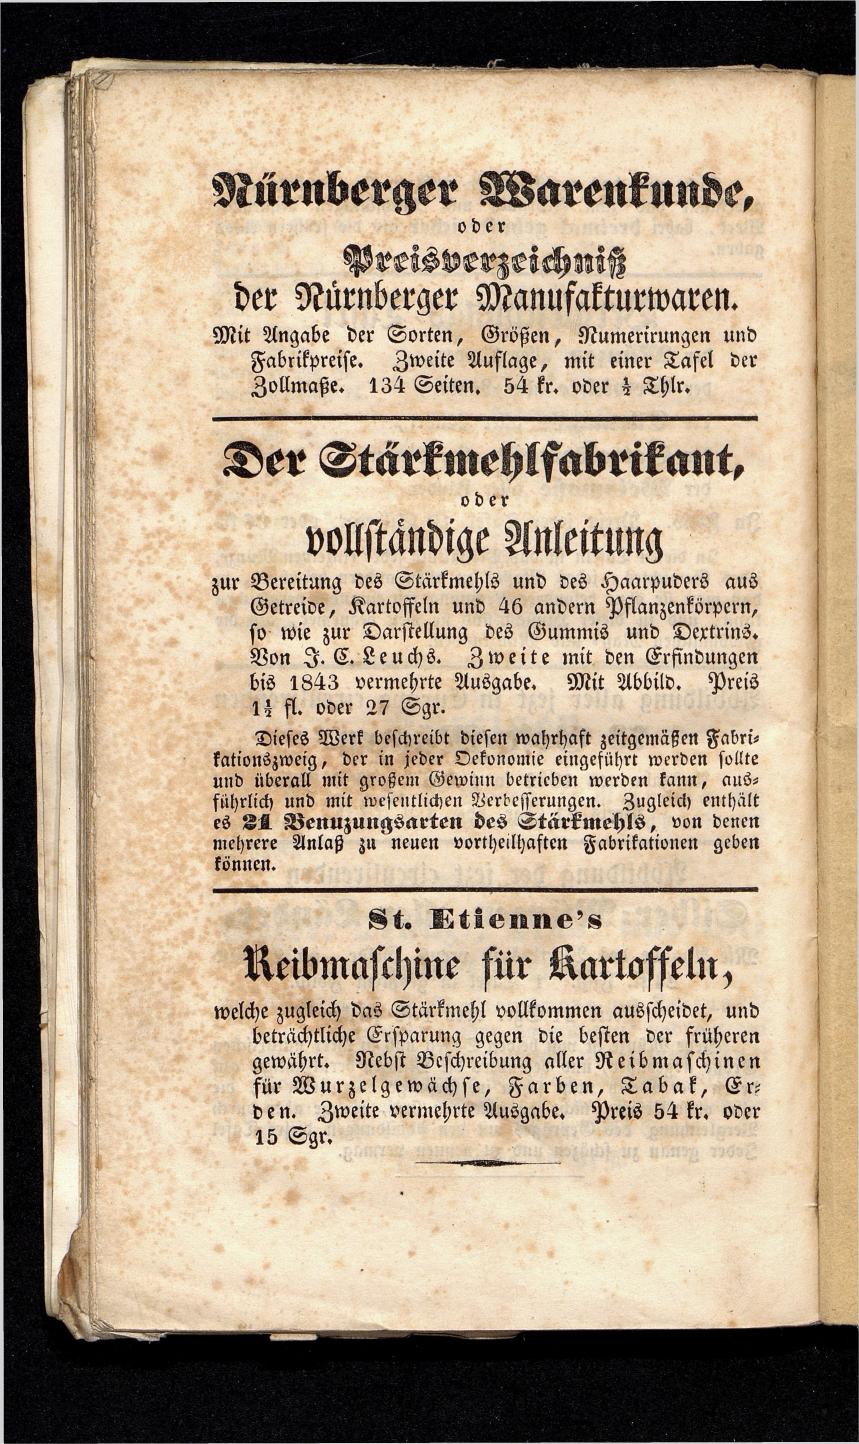 Grosses Adressbuch der Kaufleute. No. 13. Oesterreich ober u. unter der Enns 1844 - Seite 114